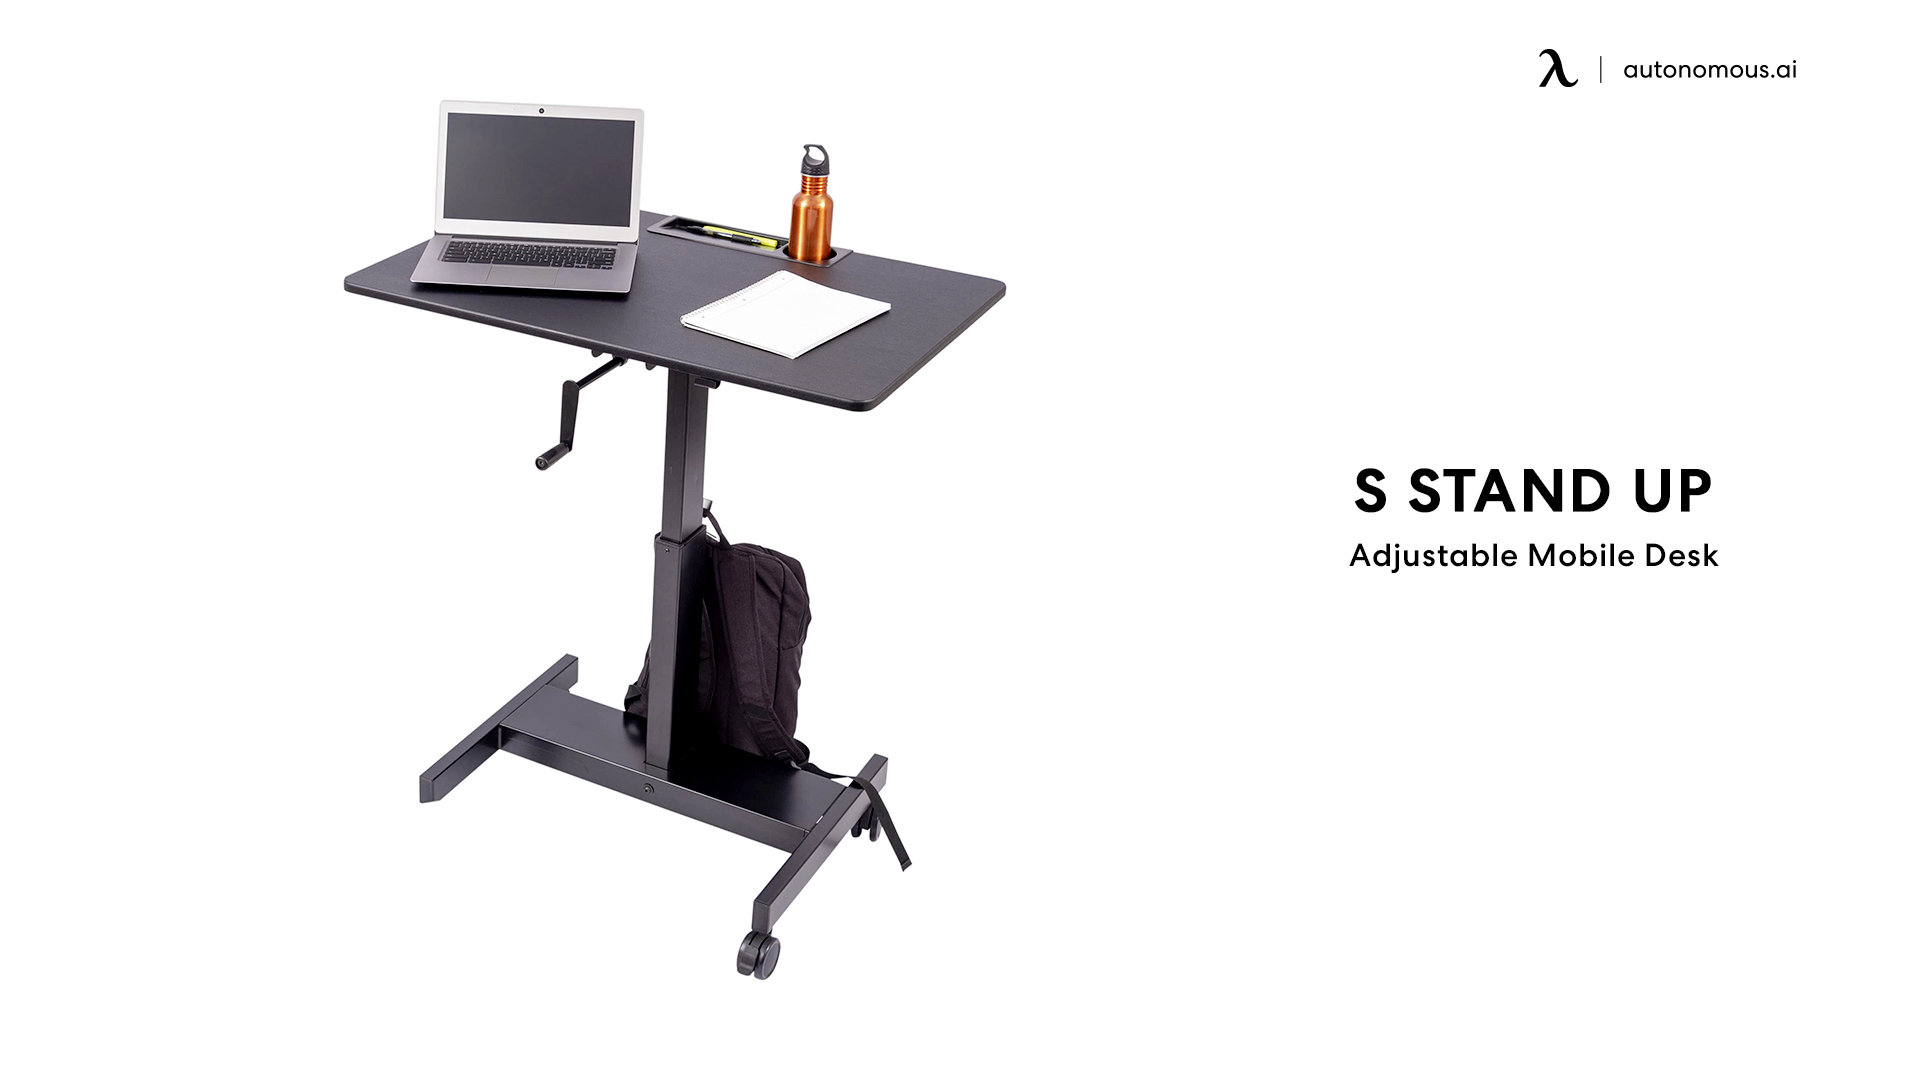 S Stand Up Adjustable Mobile Desk